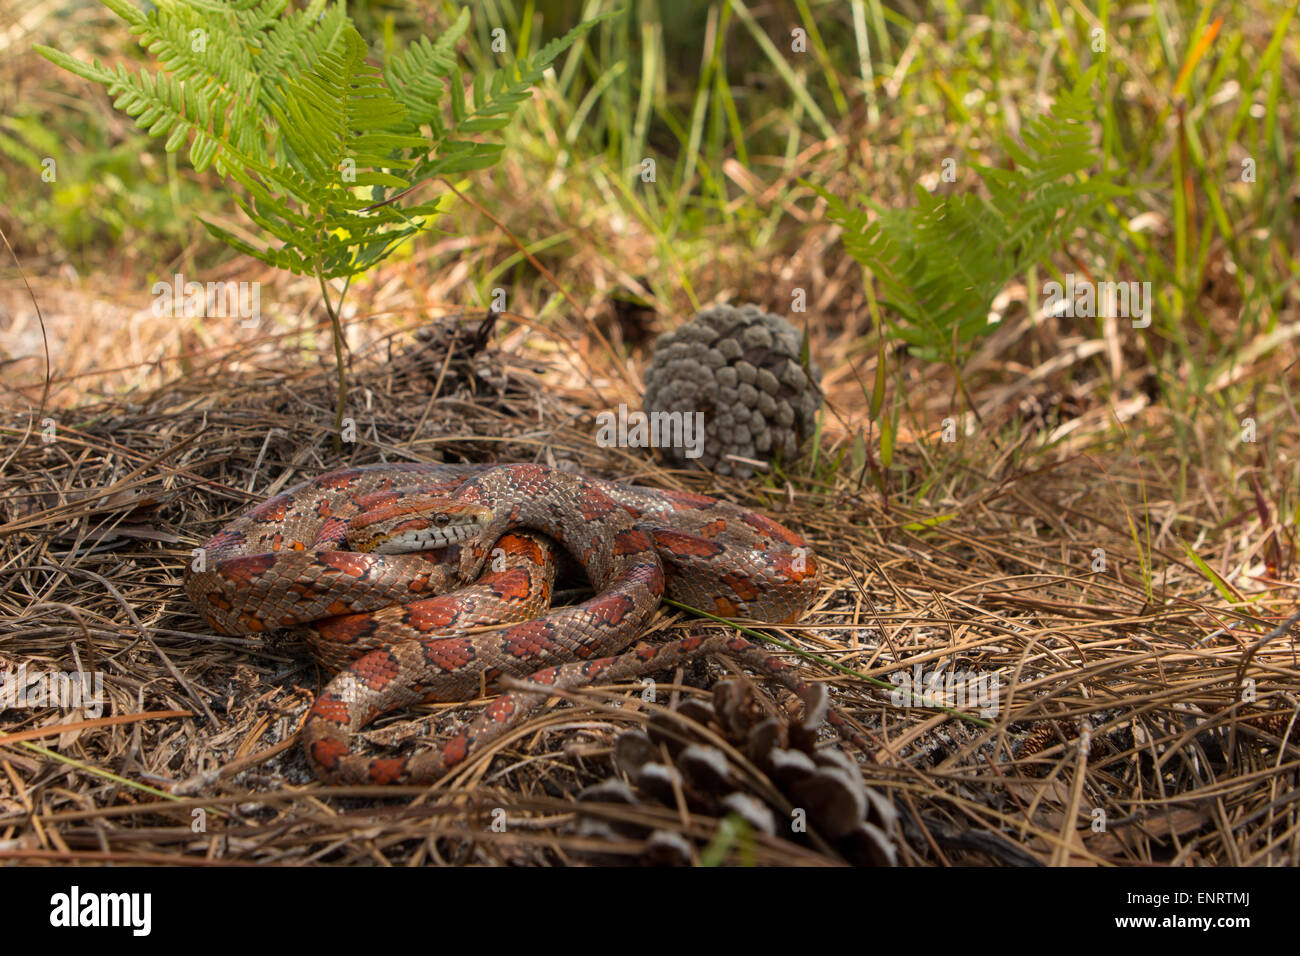 Kornnatter von Okeechobee County, FL - Pantherophis guttatus Stockfoto